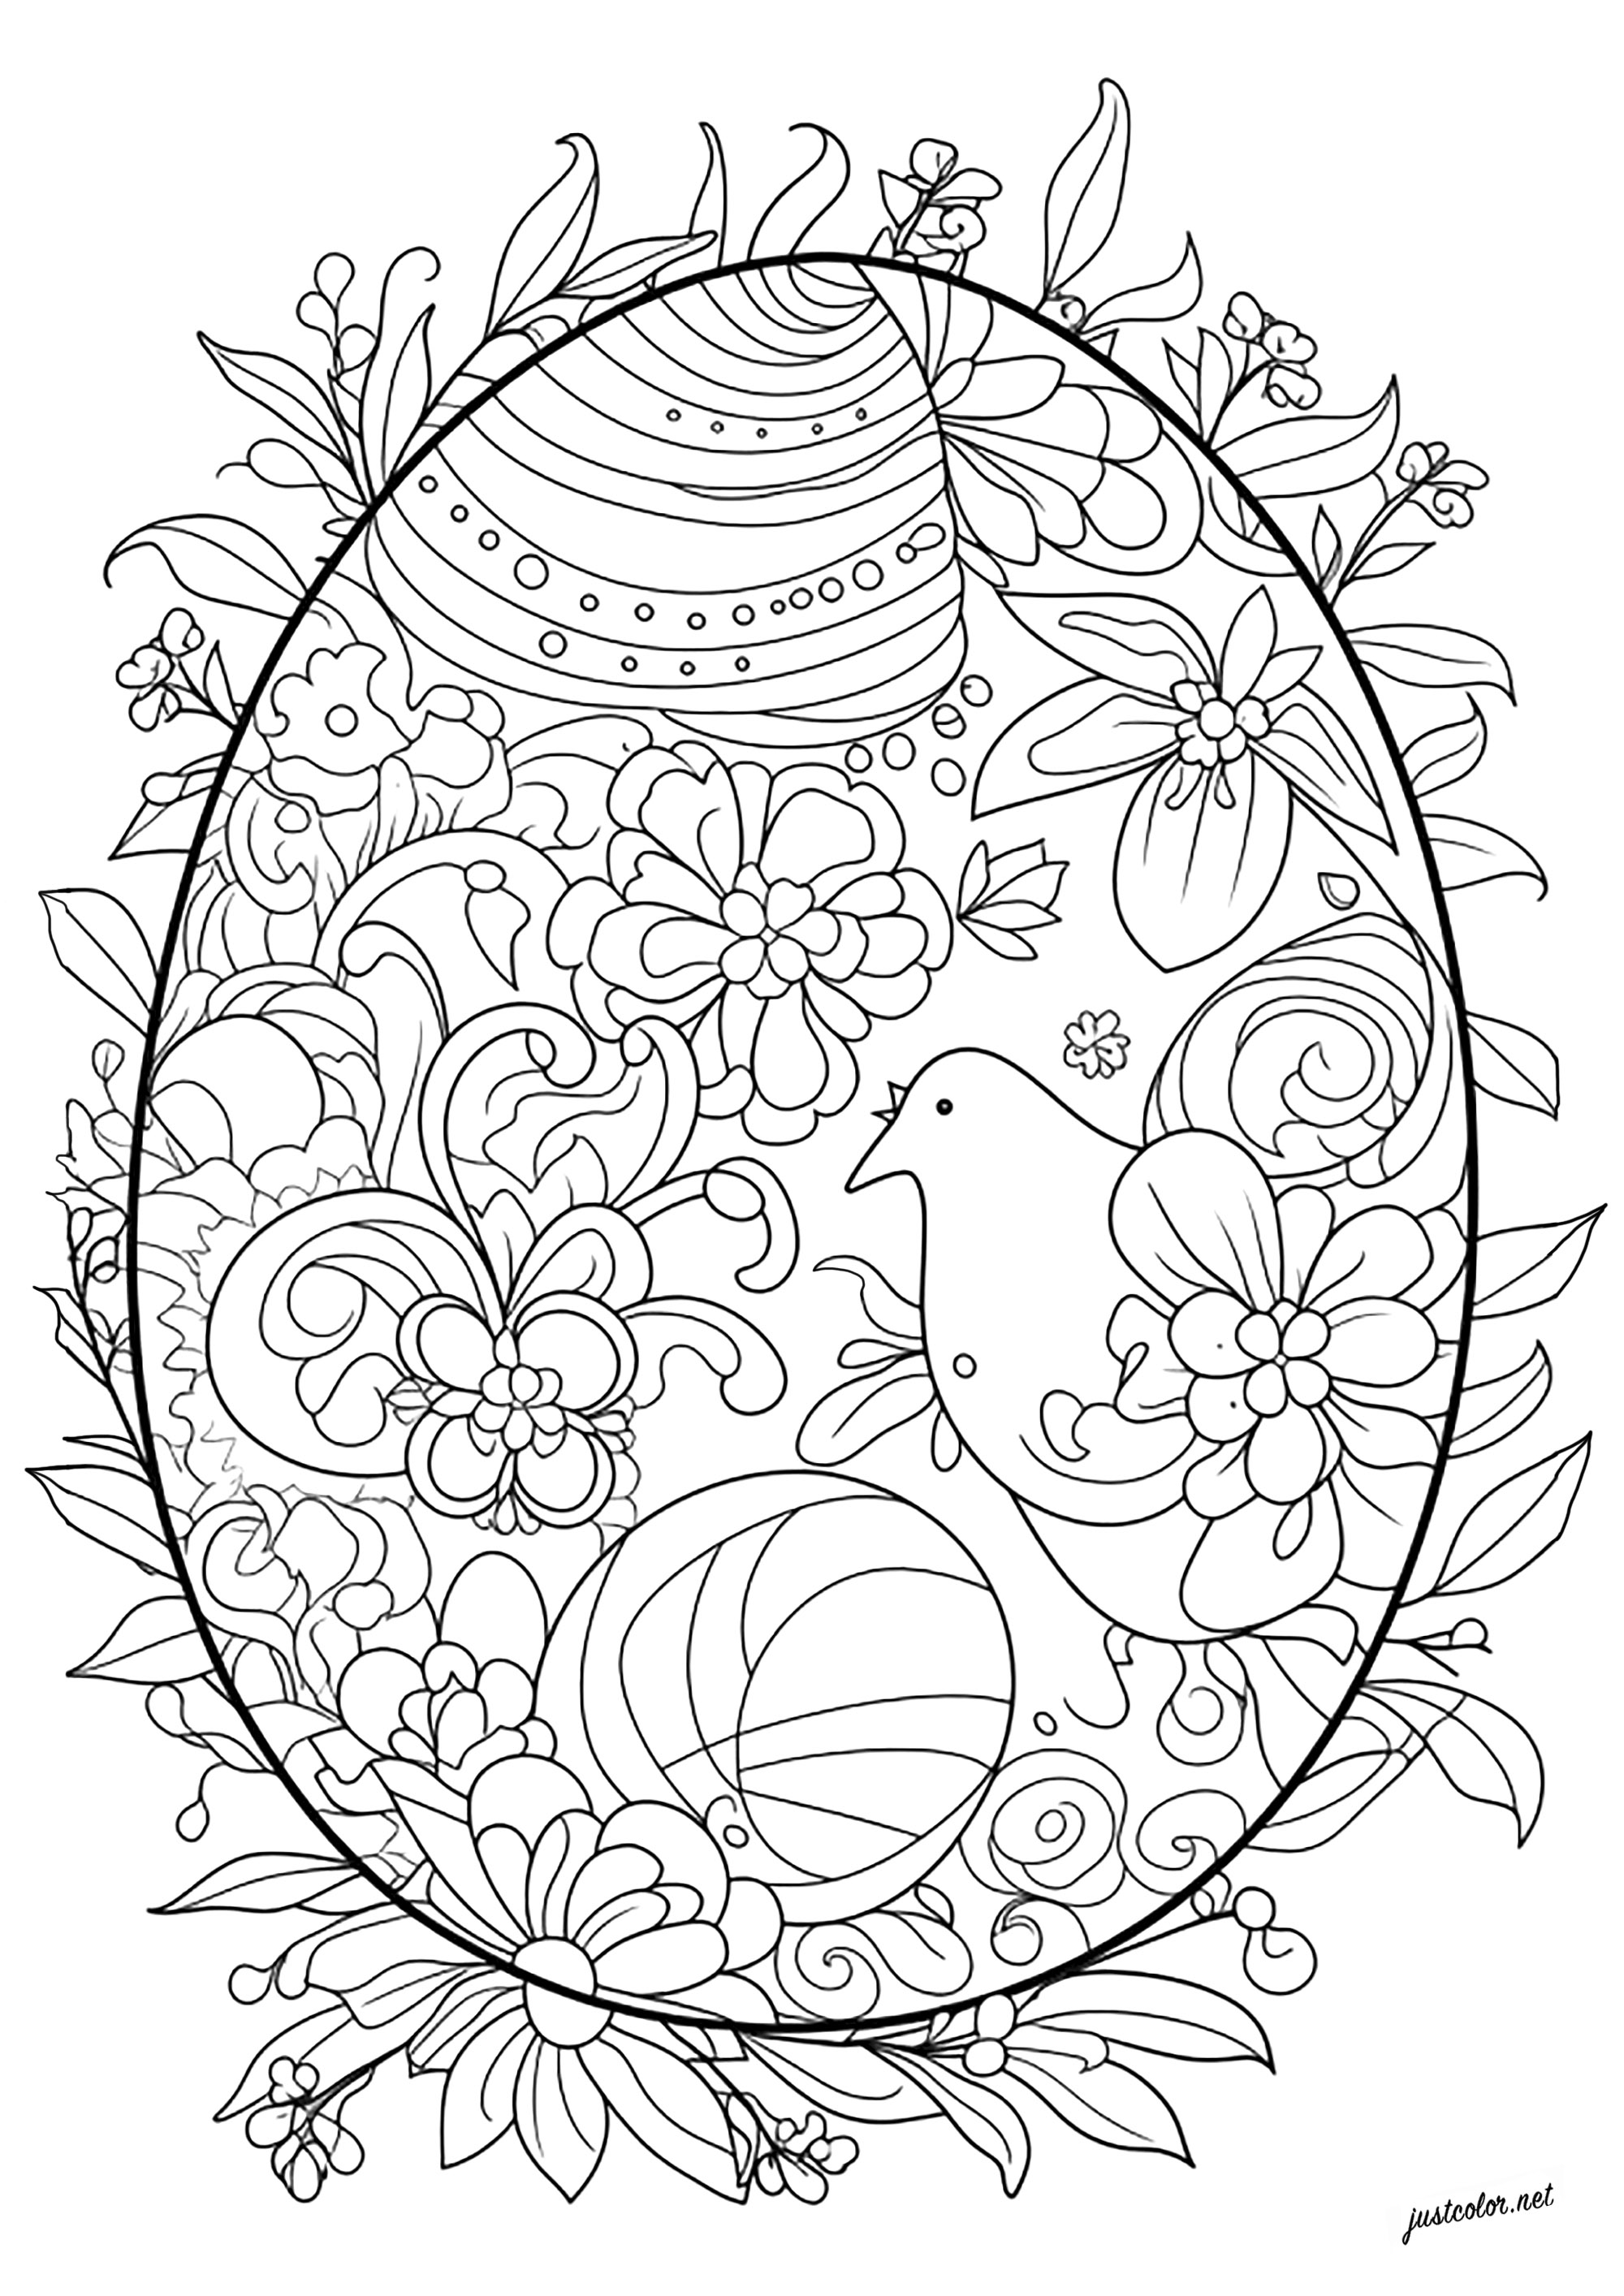 Coloriage complexe d'un oeuf de Pâques. De nombreux motifs abstraits, fleurs et même une poule à colorier dans ce bel oeuf de Pâques